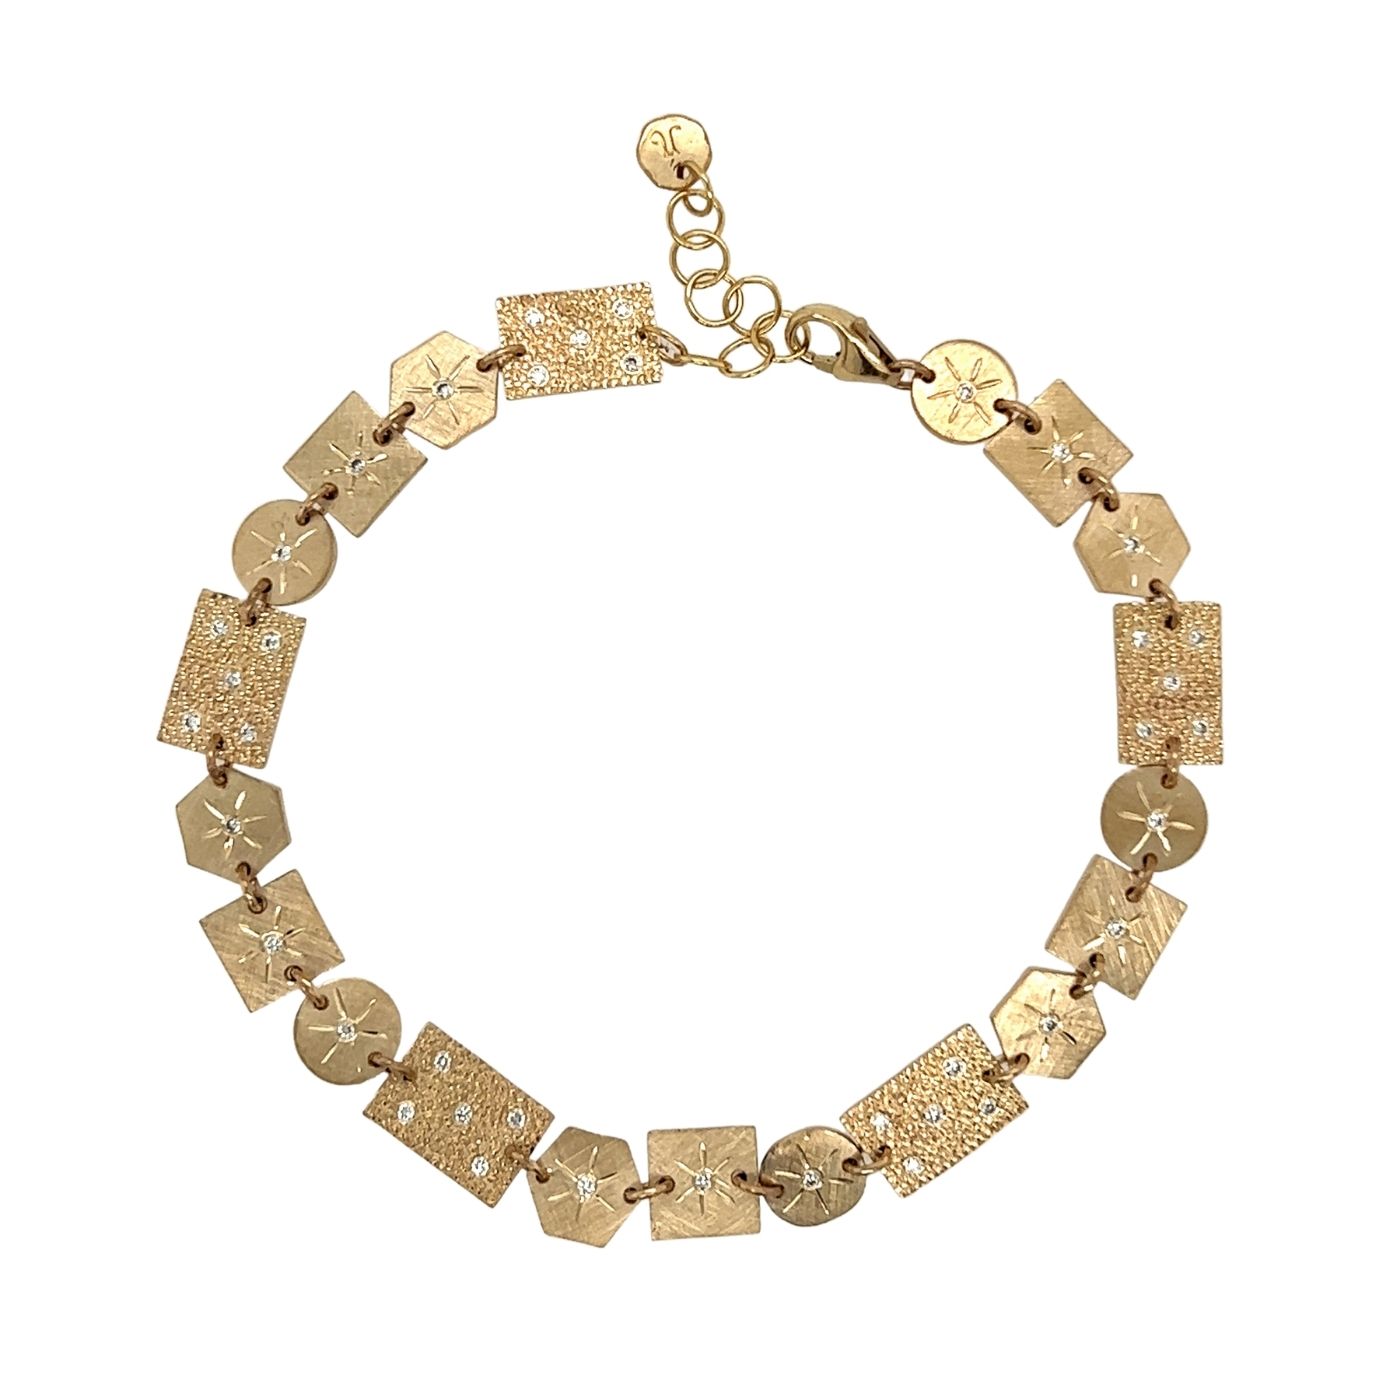 GIDG 14k Gold Bracelet